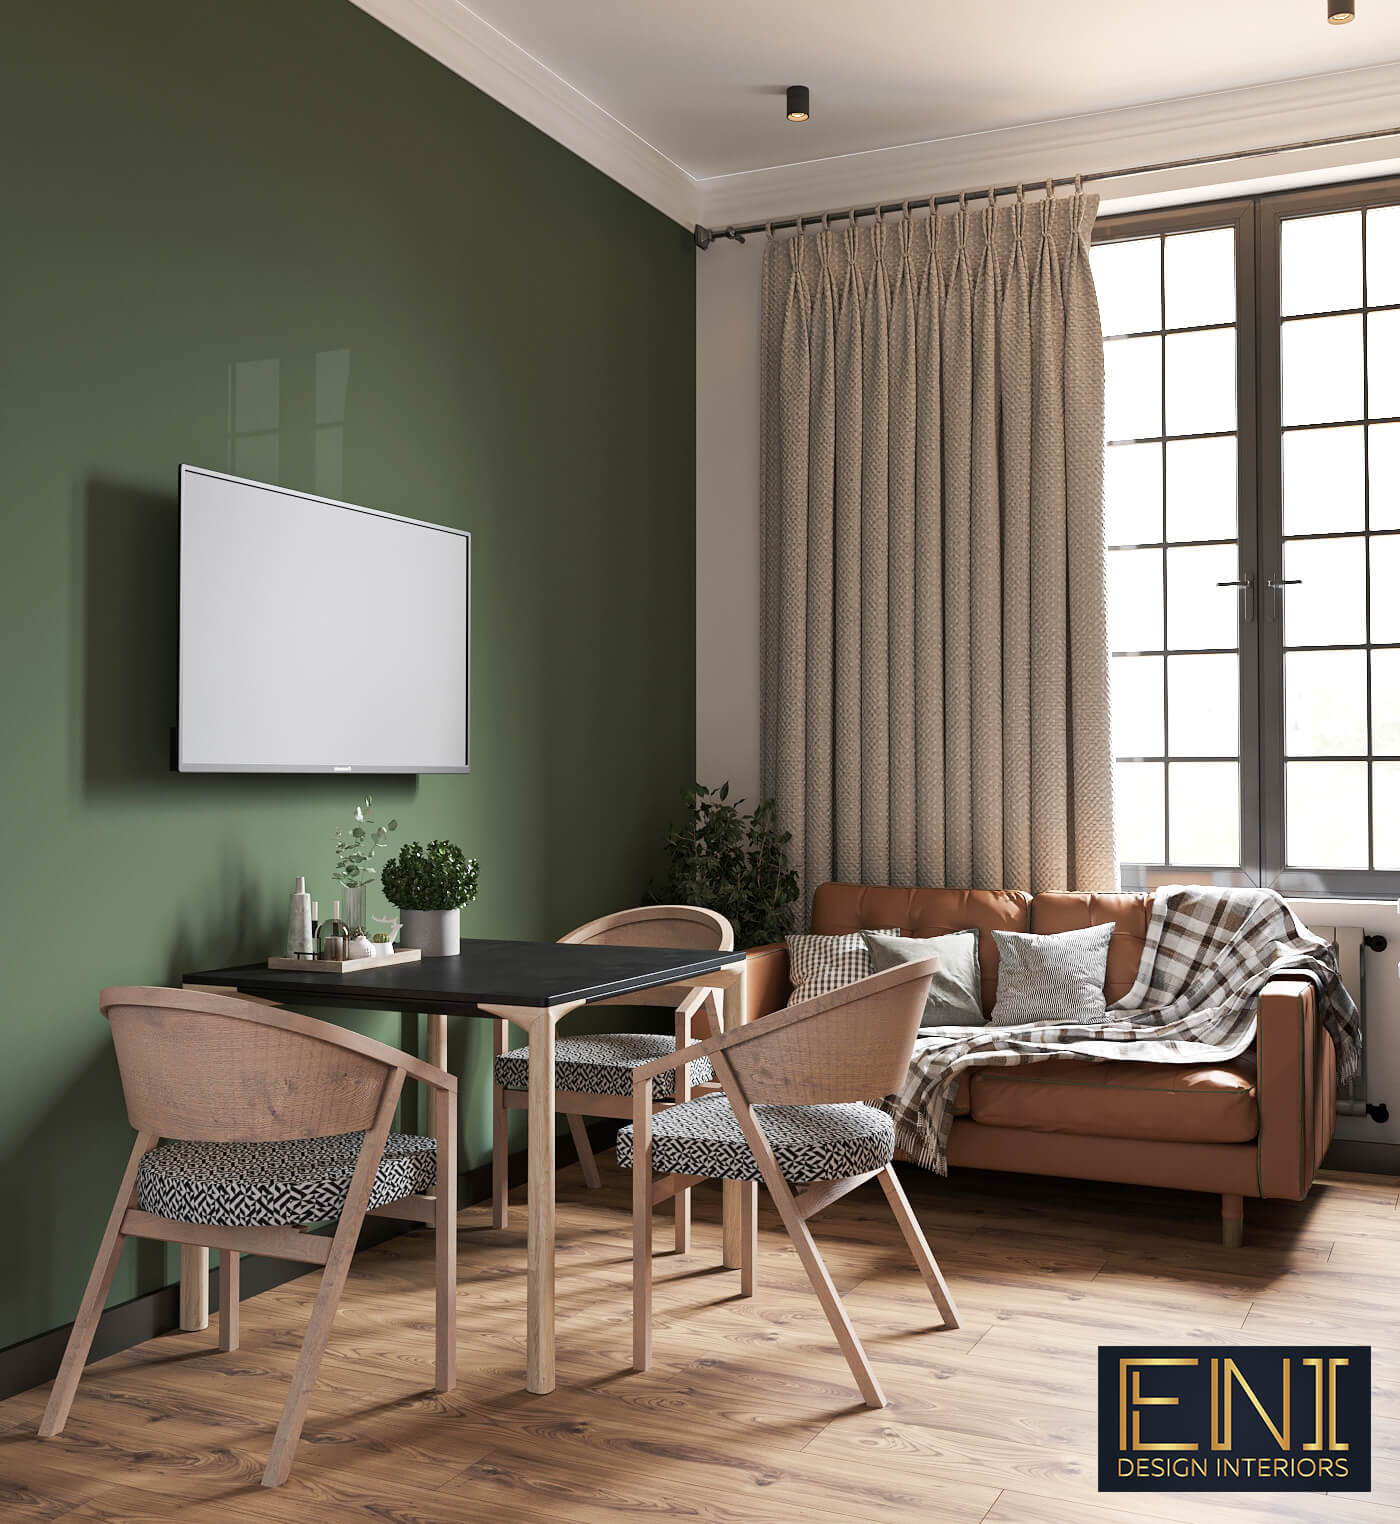 Milano - design interior, ENI Design